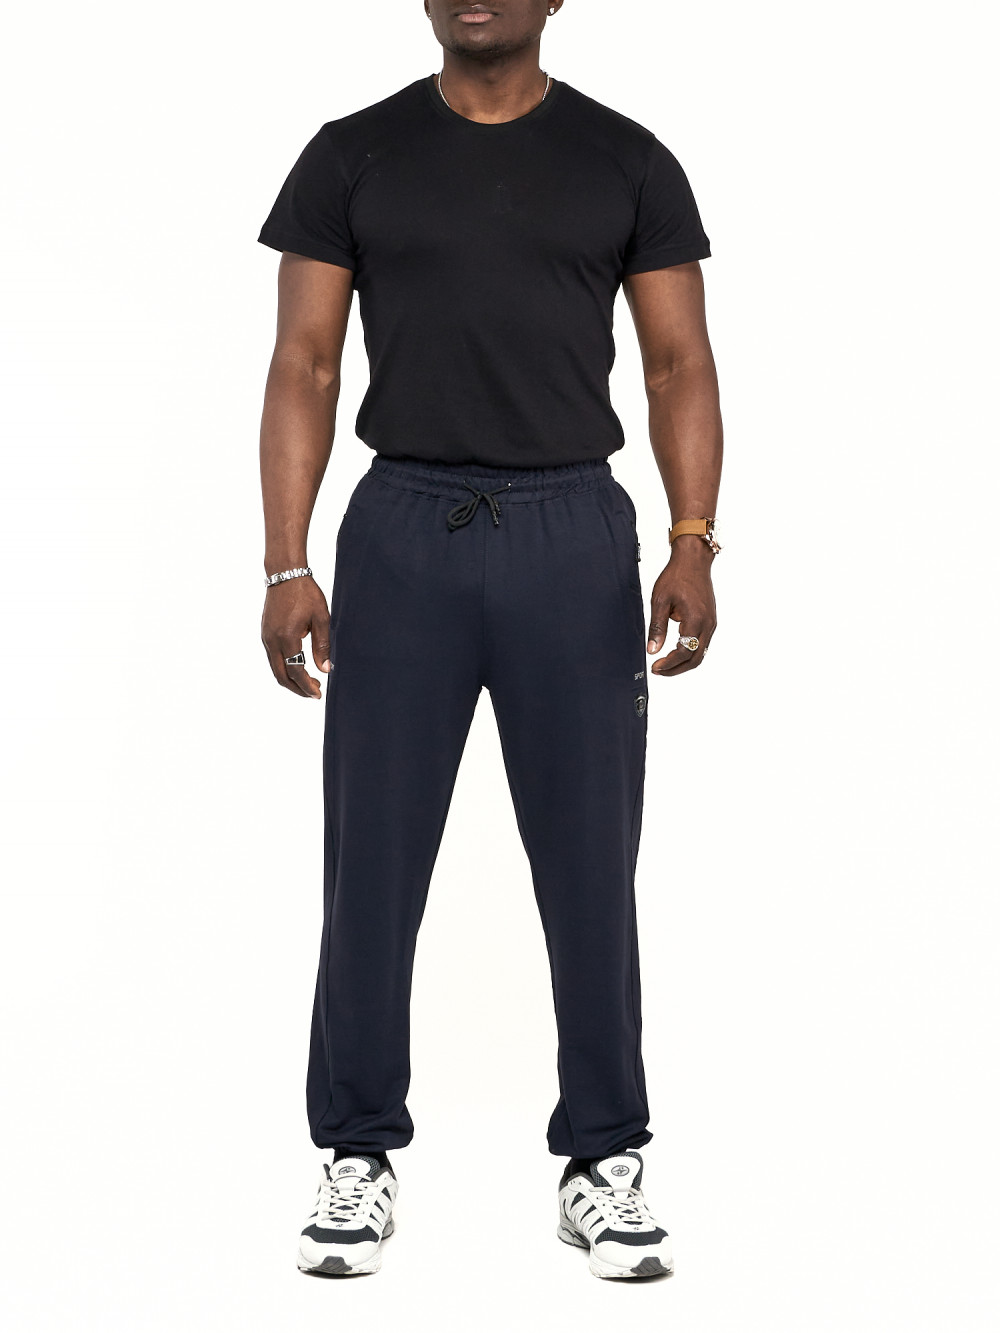 Спортивные брюки мужские NoBrand AD006 синие 54 RU